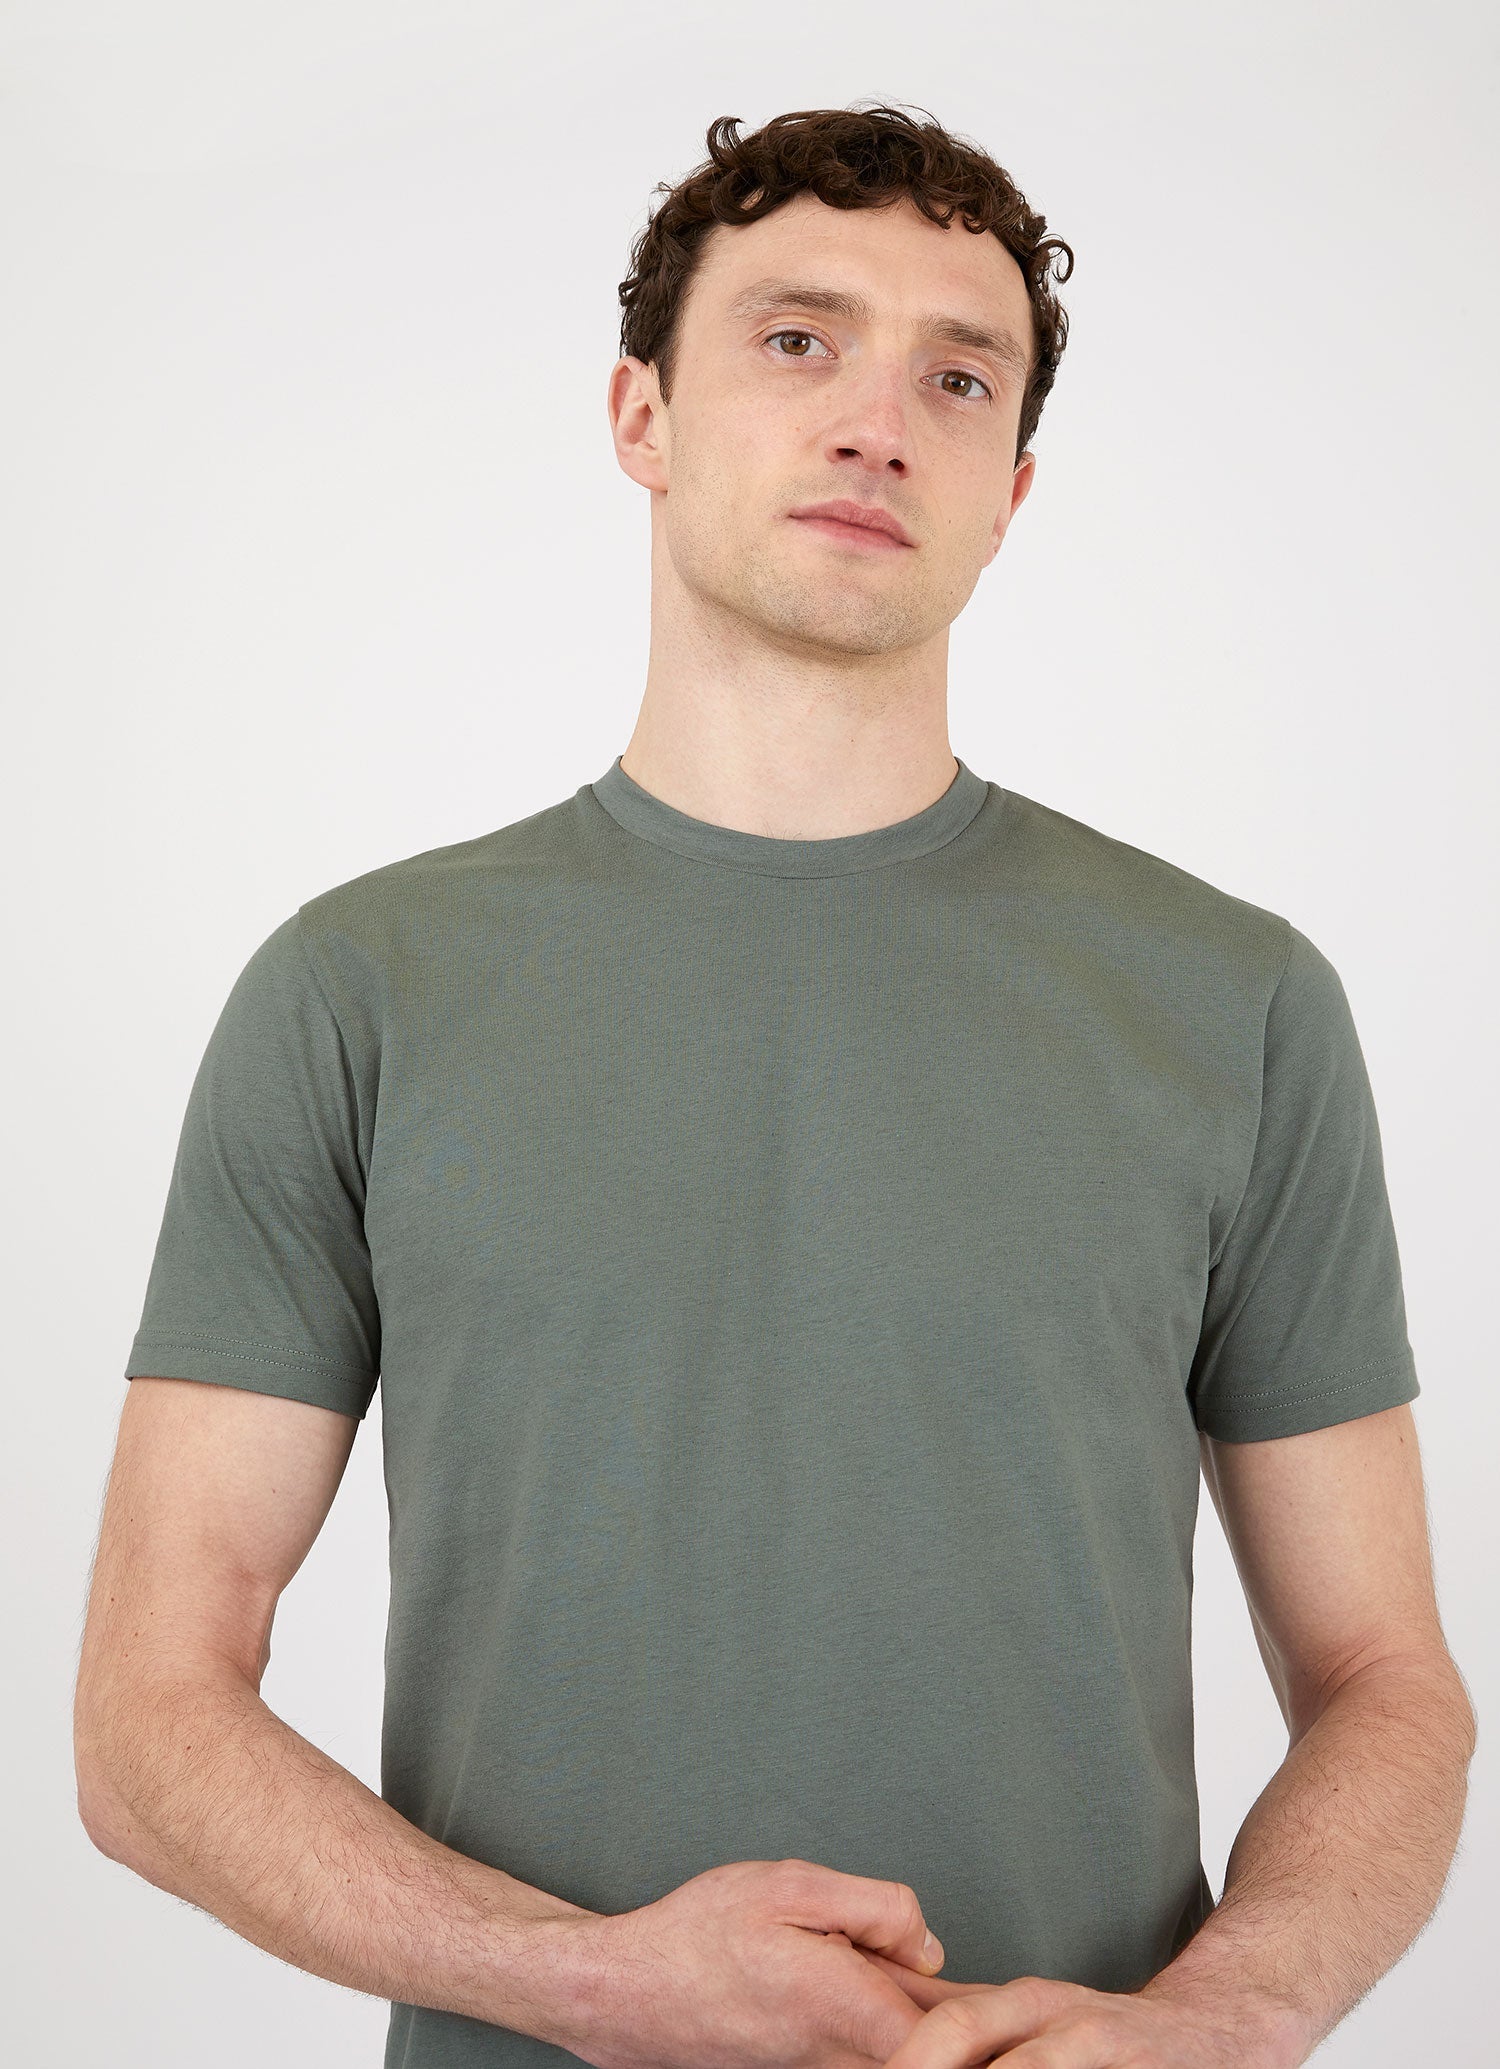 Men's Riviera T-shirt in Smoke Green Melange